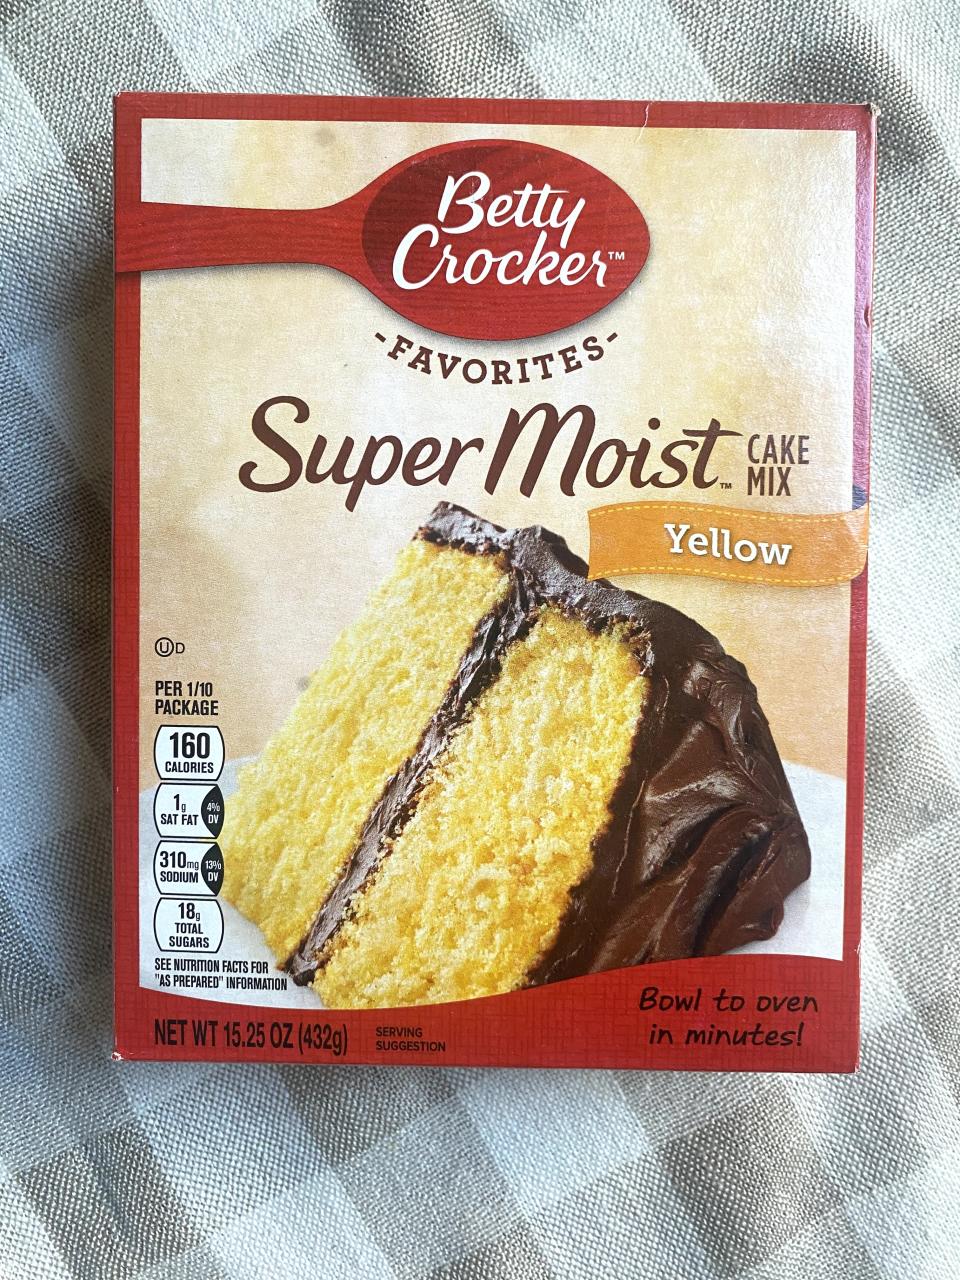 a box of betty crocker cake mix